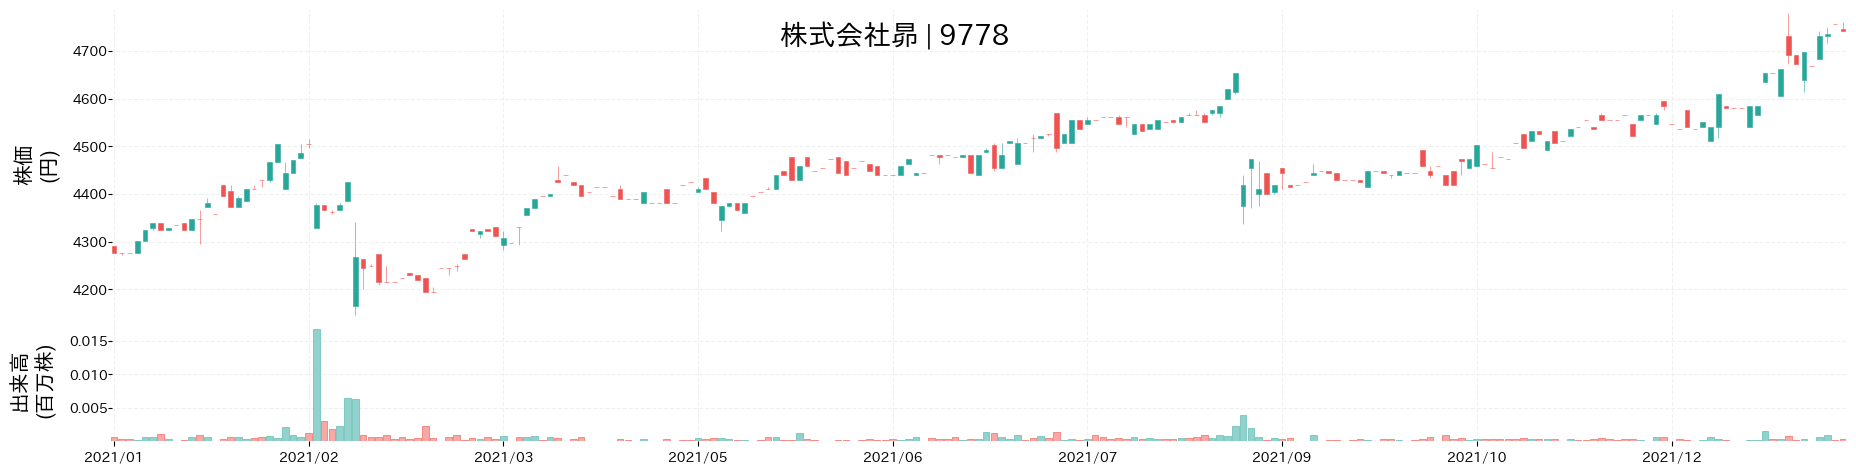 昴の株価推移(2021)